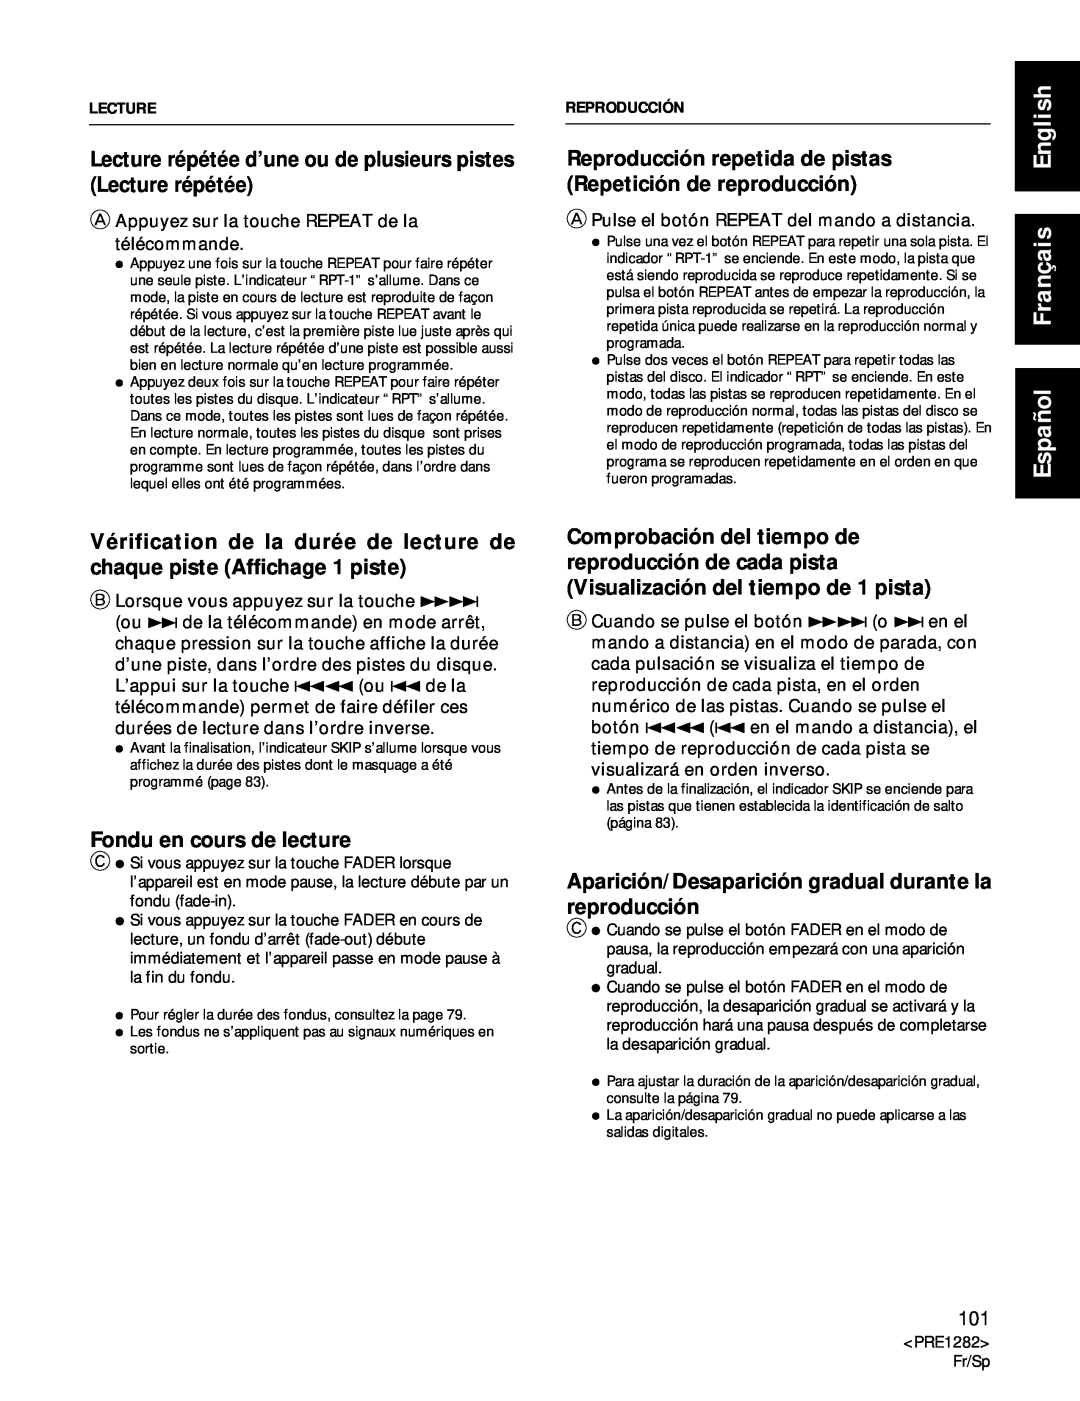 Americana Appliances CDR-850 manual Fondu en cours de lecture, Español Français English 